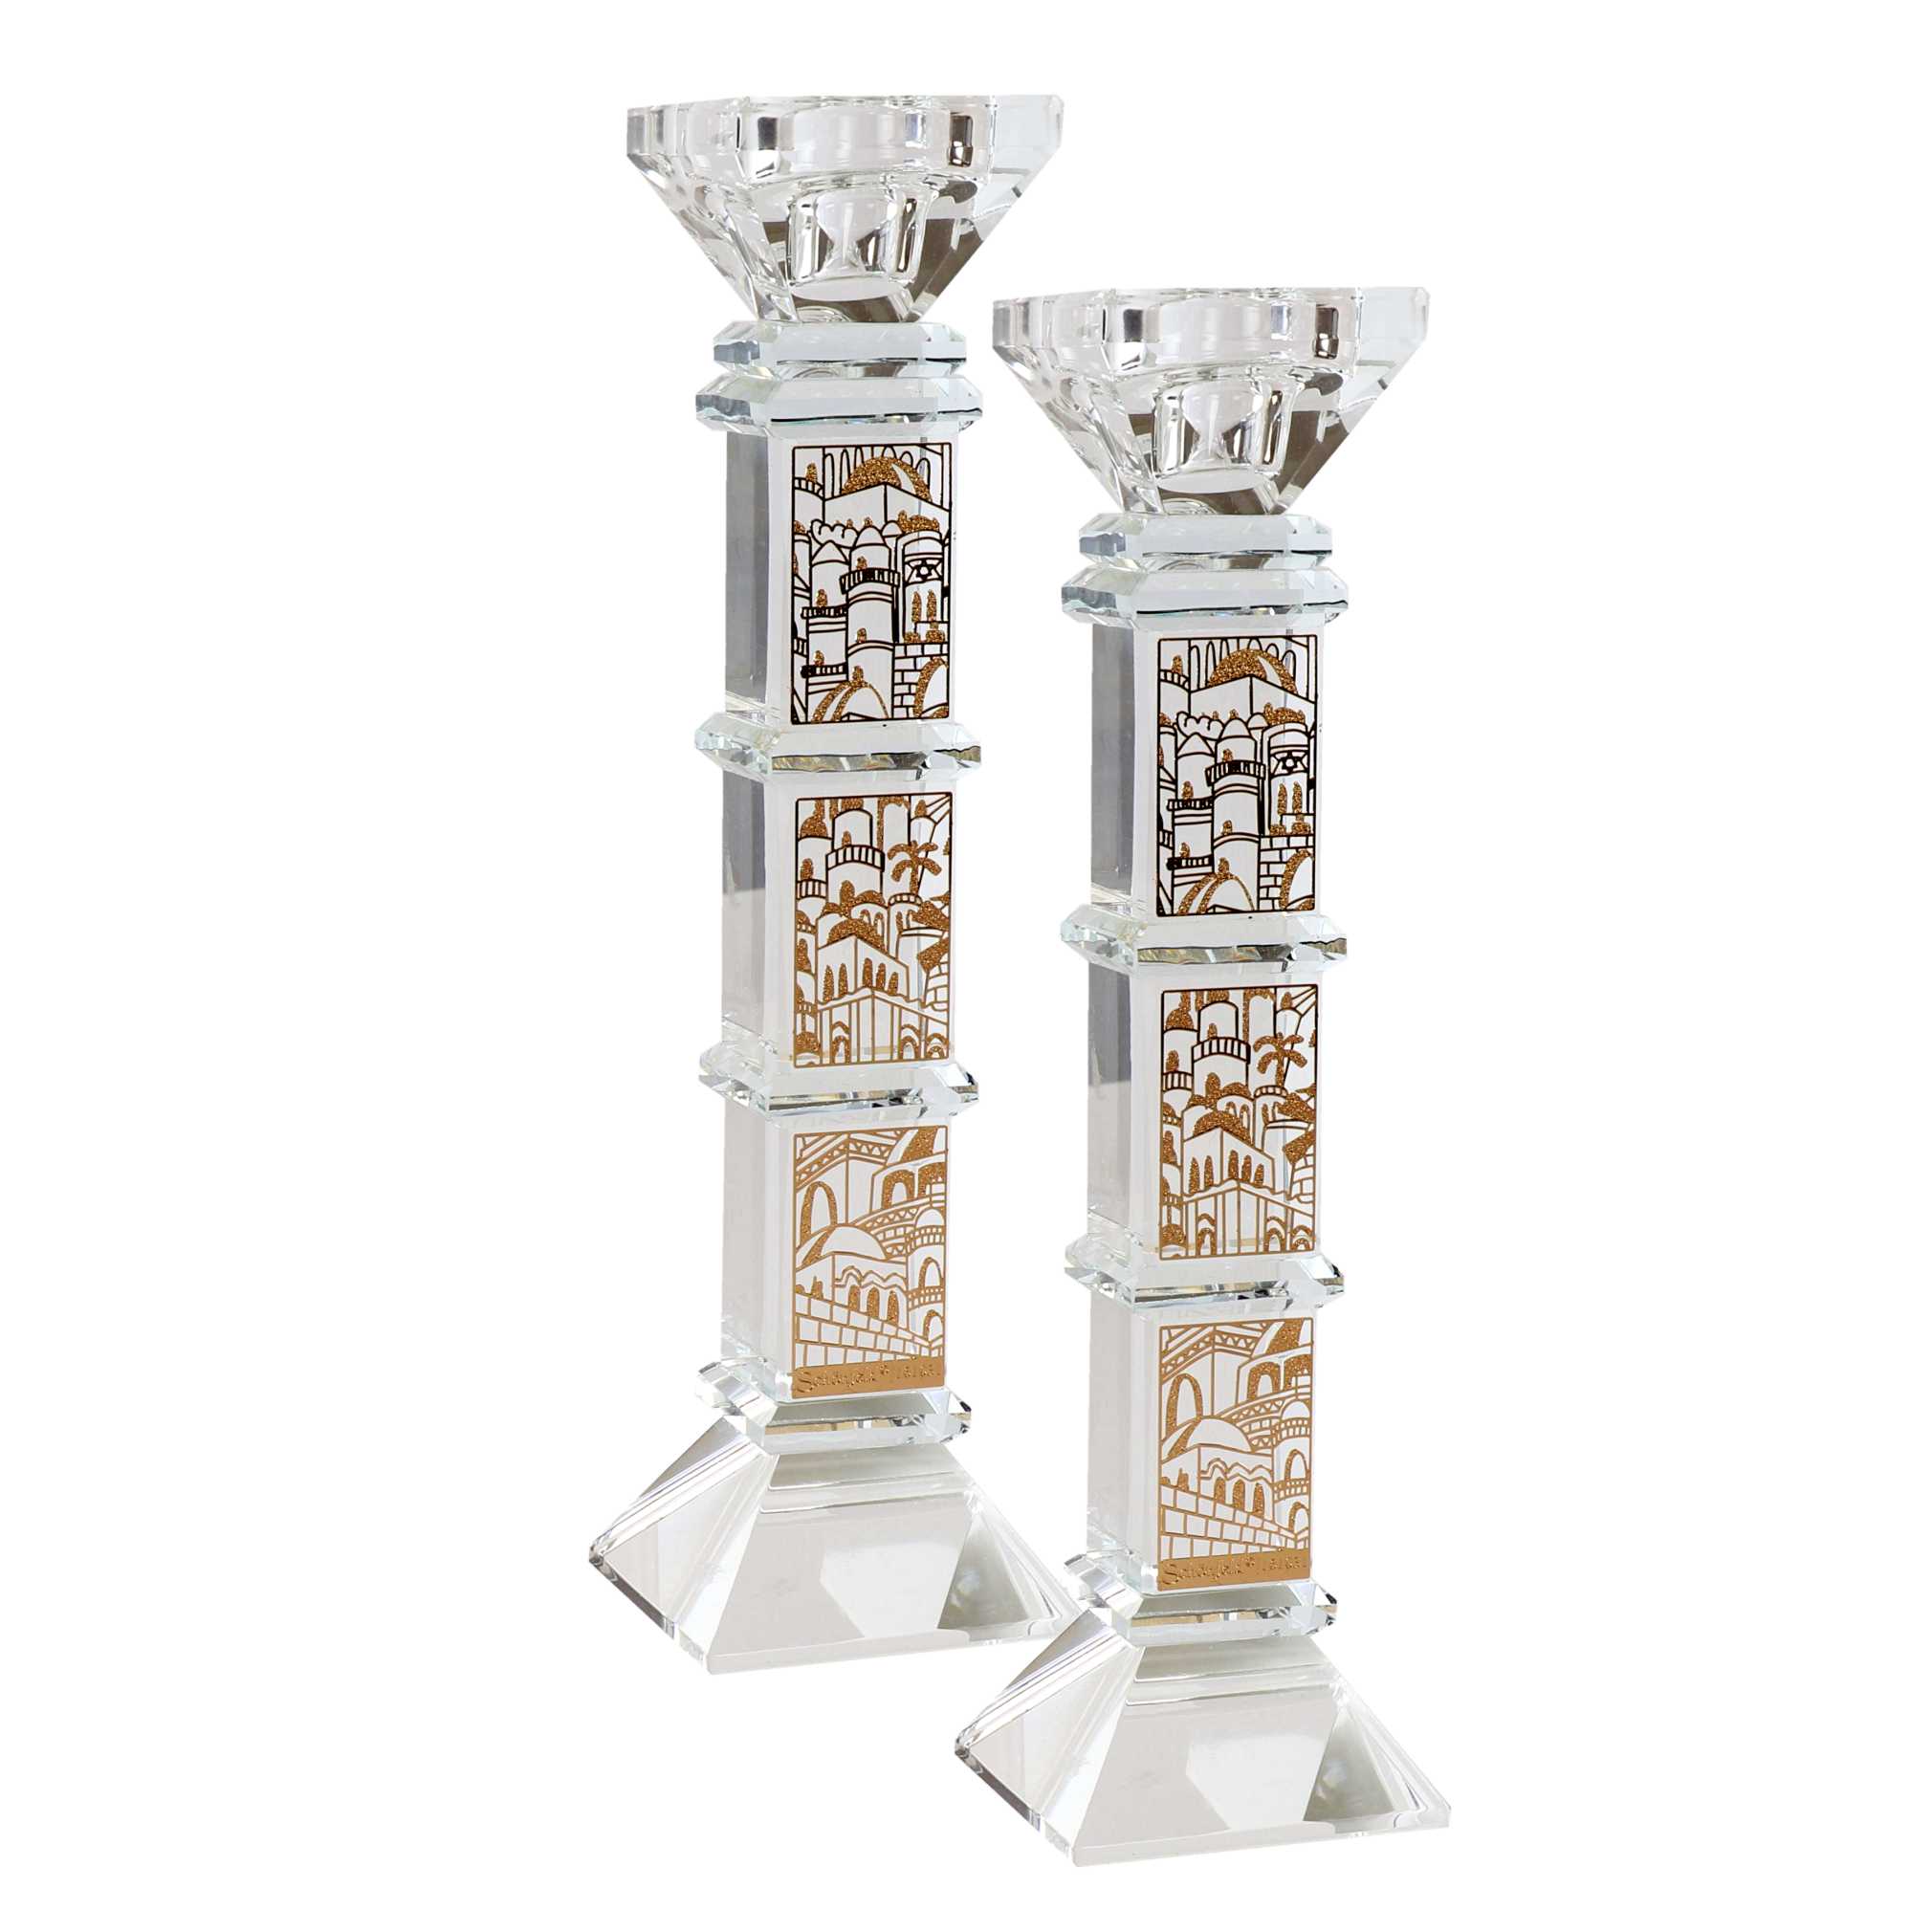 Crystal Square Candlesticks - Gold Jerusalem Design 9"